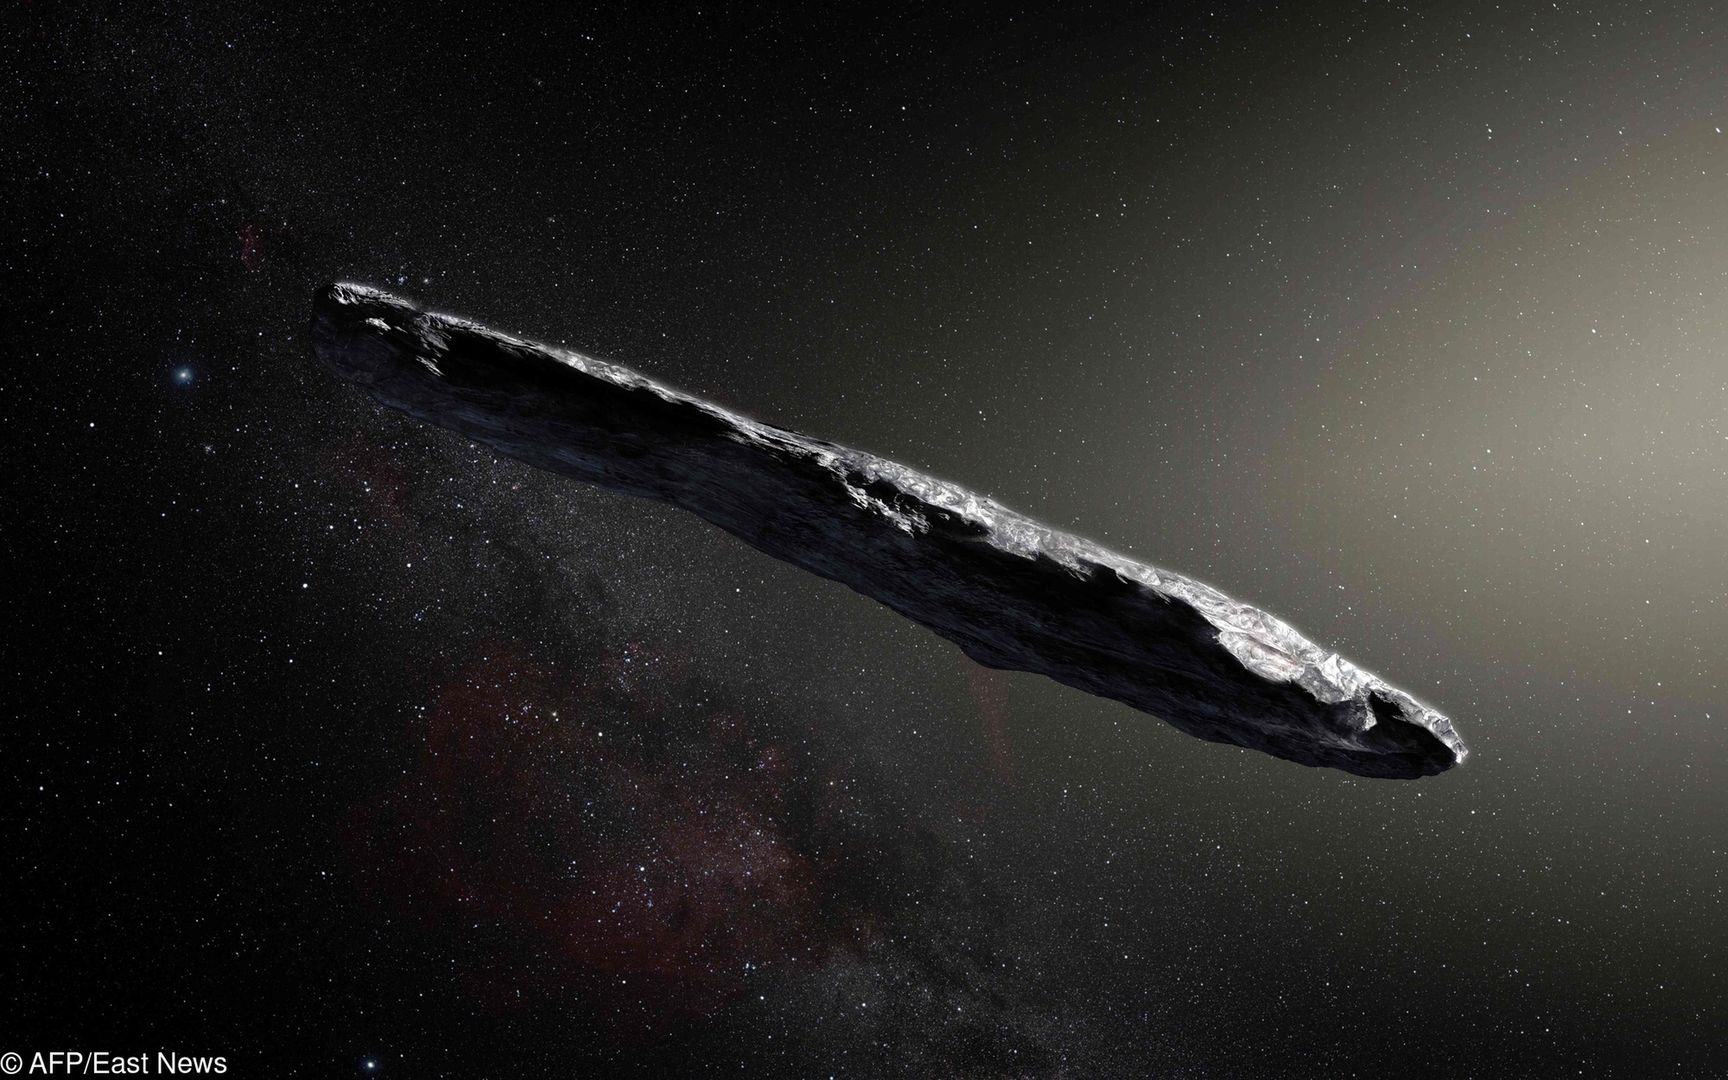 "Oumuamua" jest czymś, czego nigdy nie widzieliśmy. Obiekt nie pasuje do obecnej wiedzy